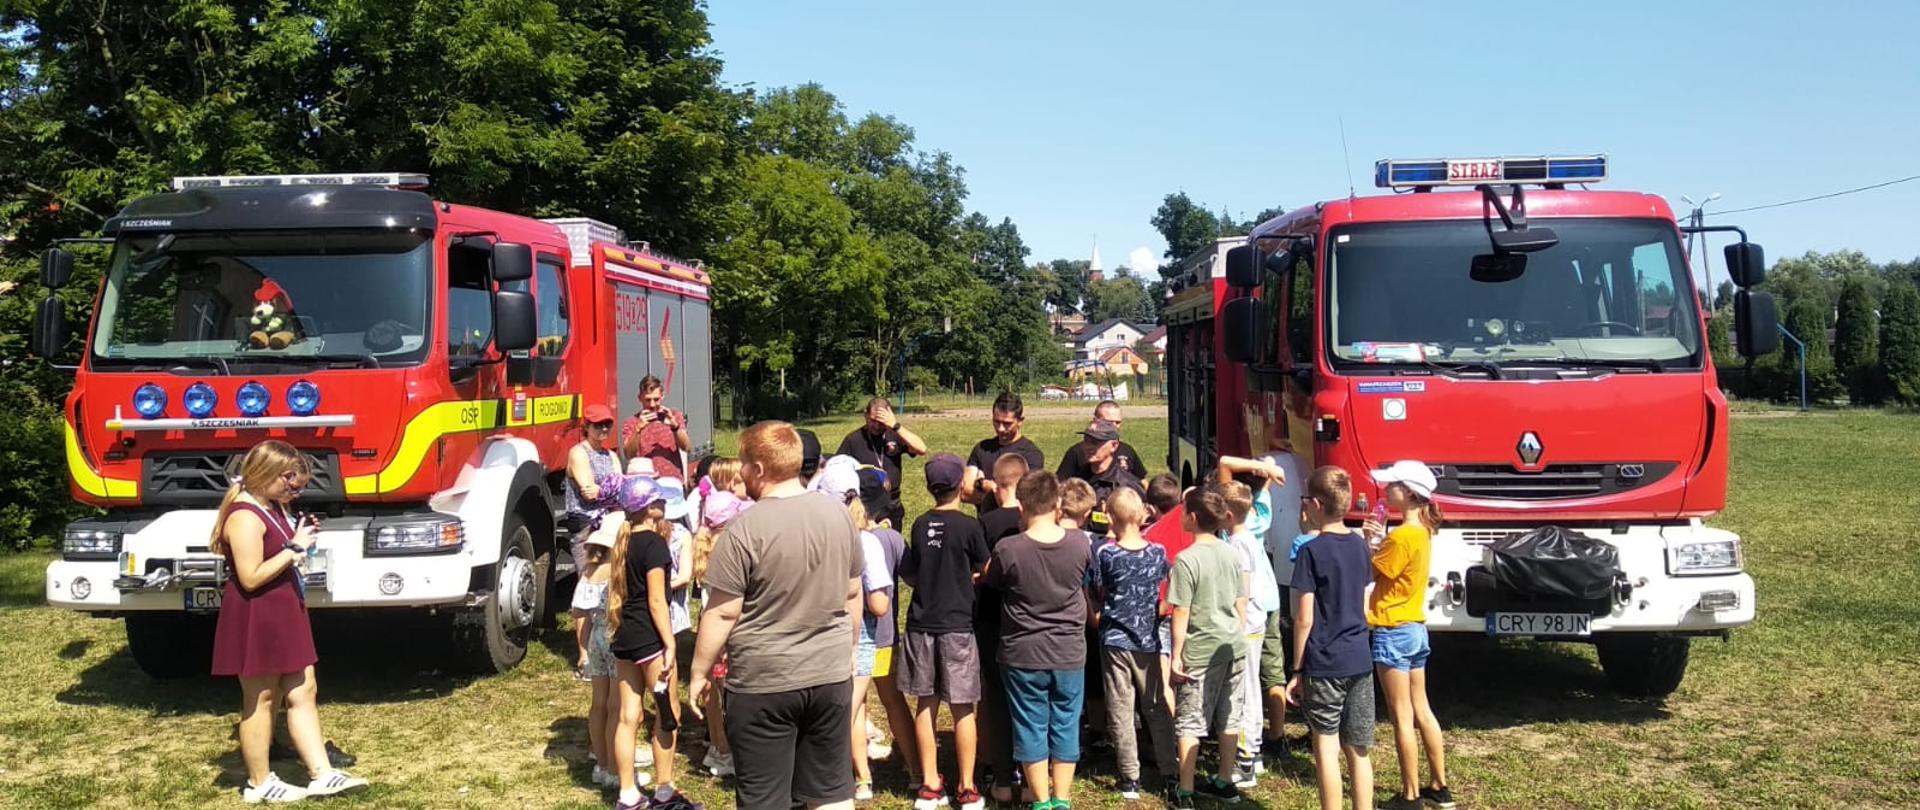 Zdjęcie wykonane jest na boisku i przedstawia grupę młodzieży, która słucha strażaków. Po lewej i prawej stronie zdjęcia stoi wóz strażacki. W tle zdjęcia widać drzewa oraz budynki. 